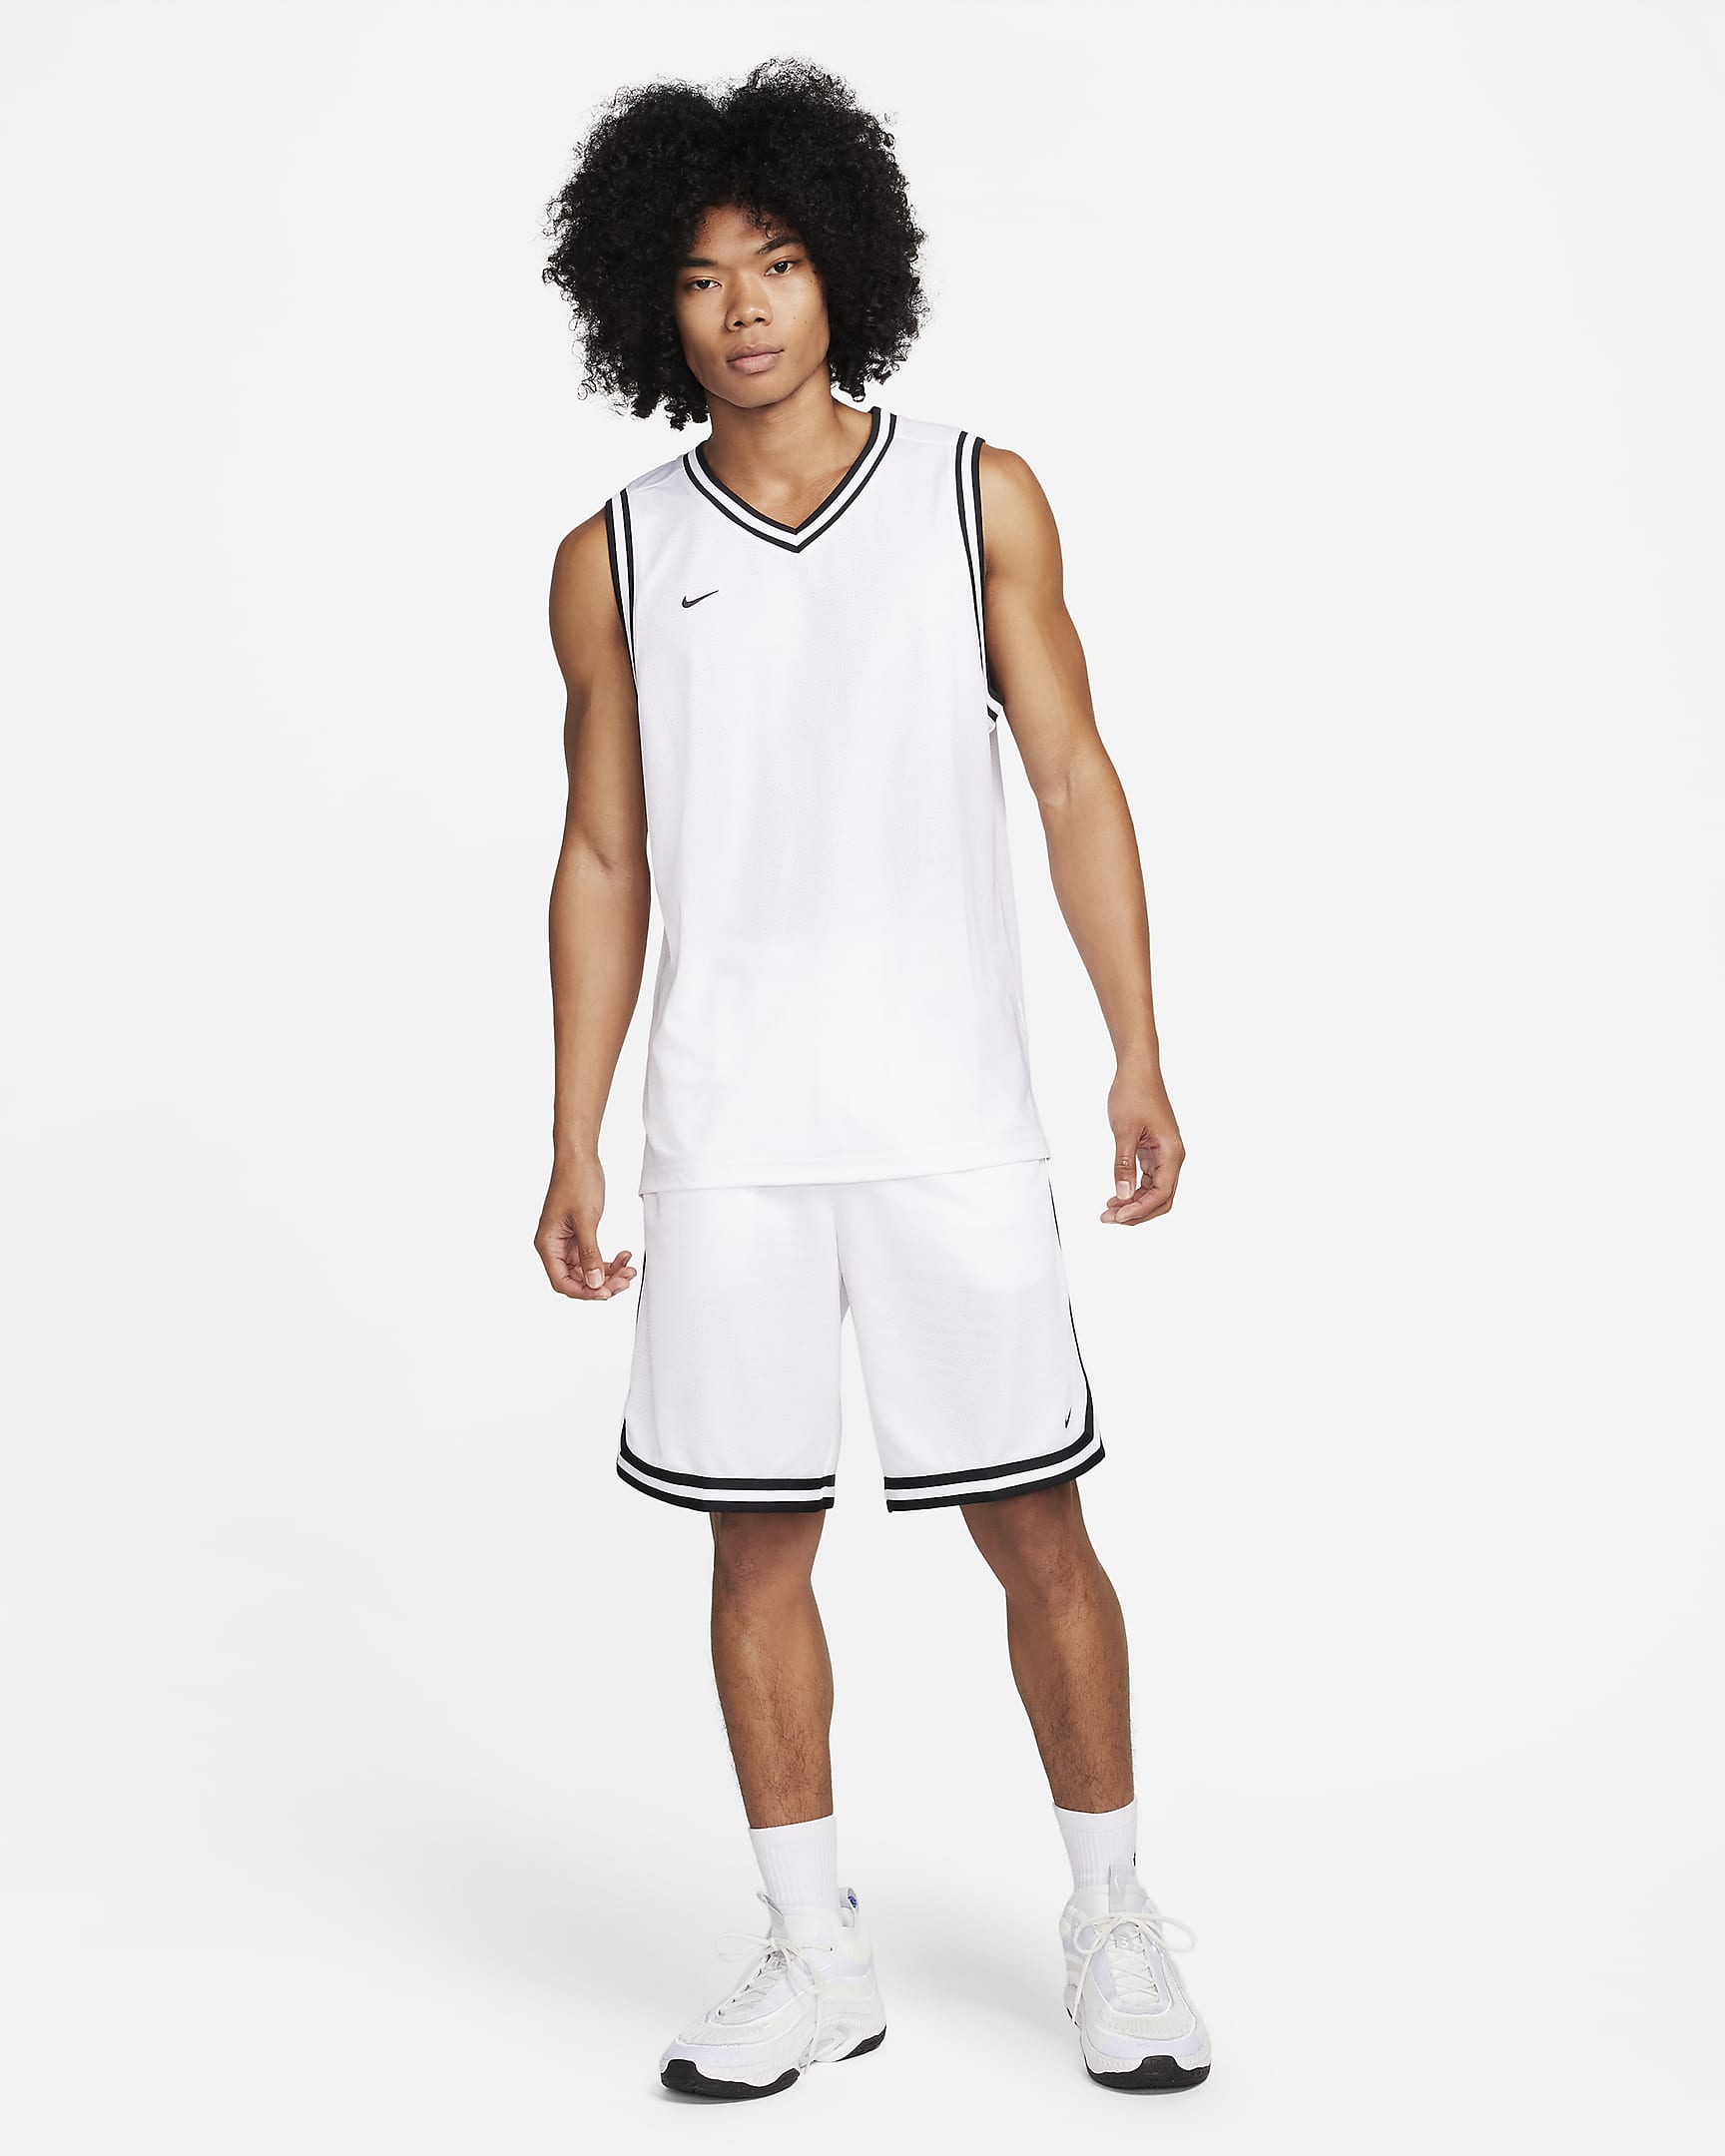 Jersey de básquetbol Dri-FIT para hombre Nike DNA. Nike.com